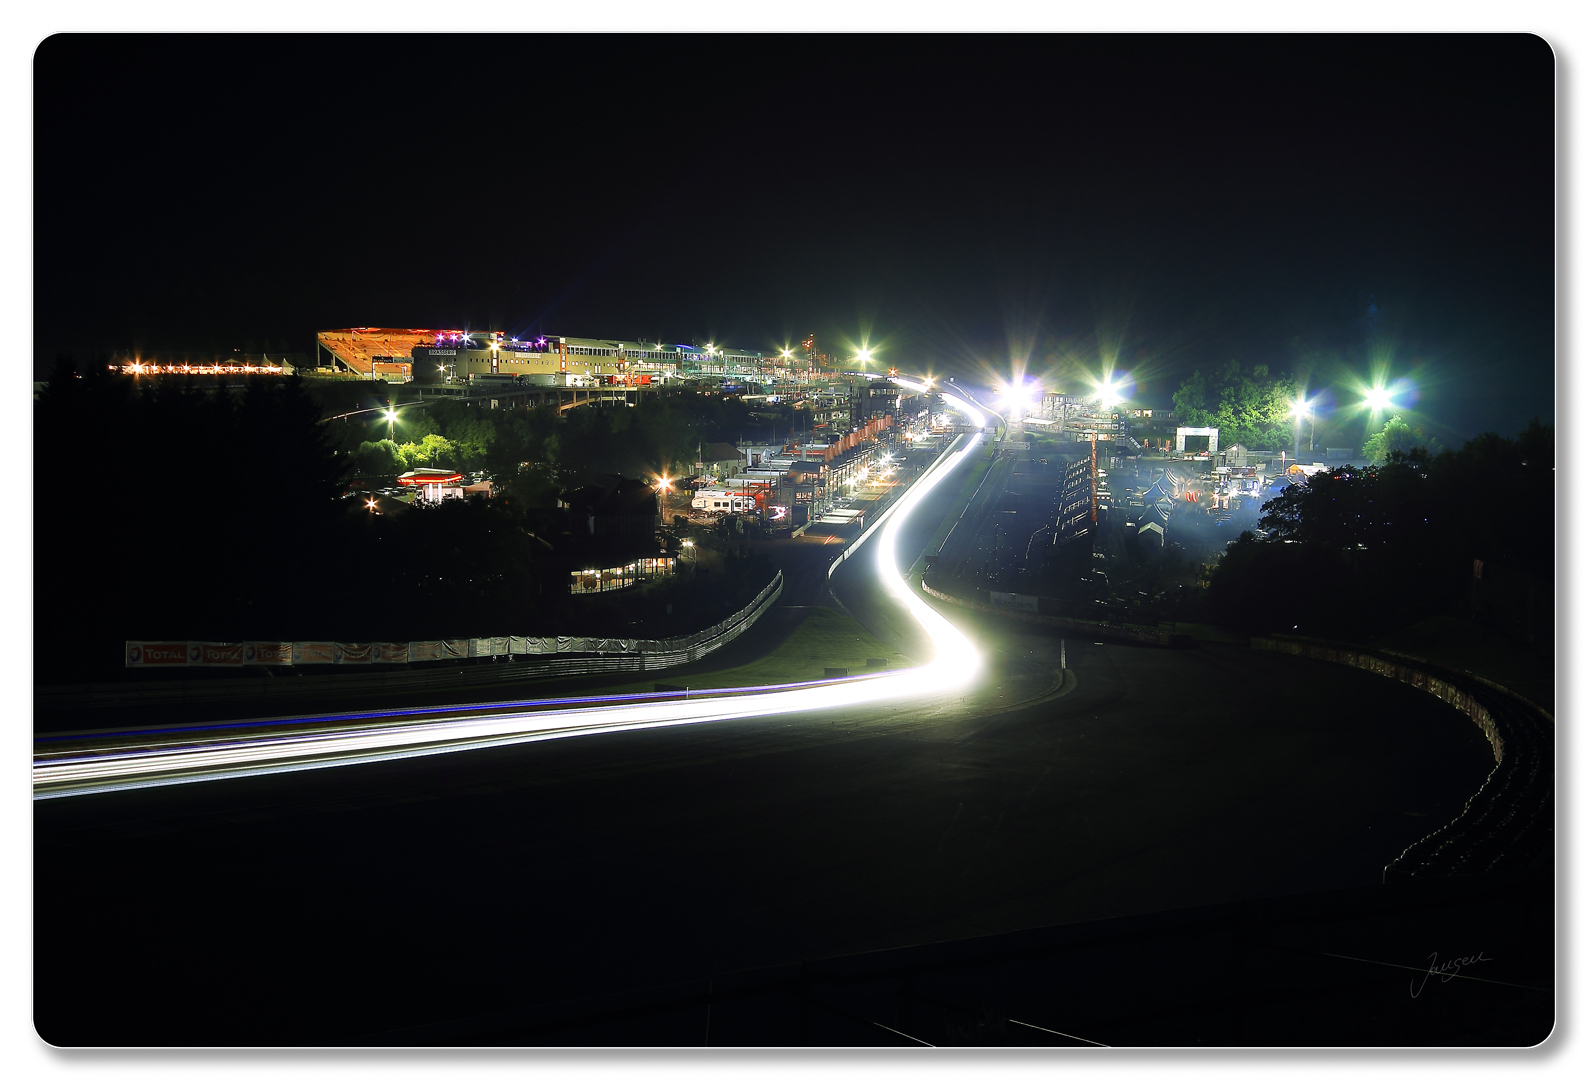 Circuit de Spa-Francorchamps - Fahrerlager bei Nacht